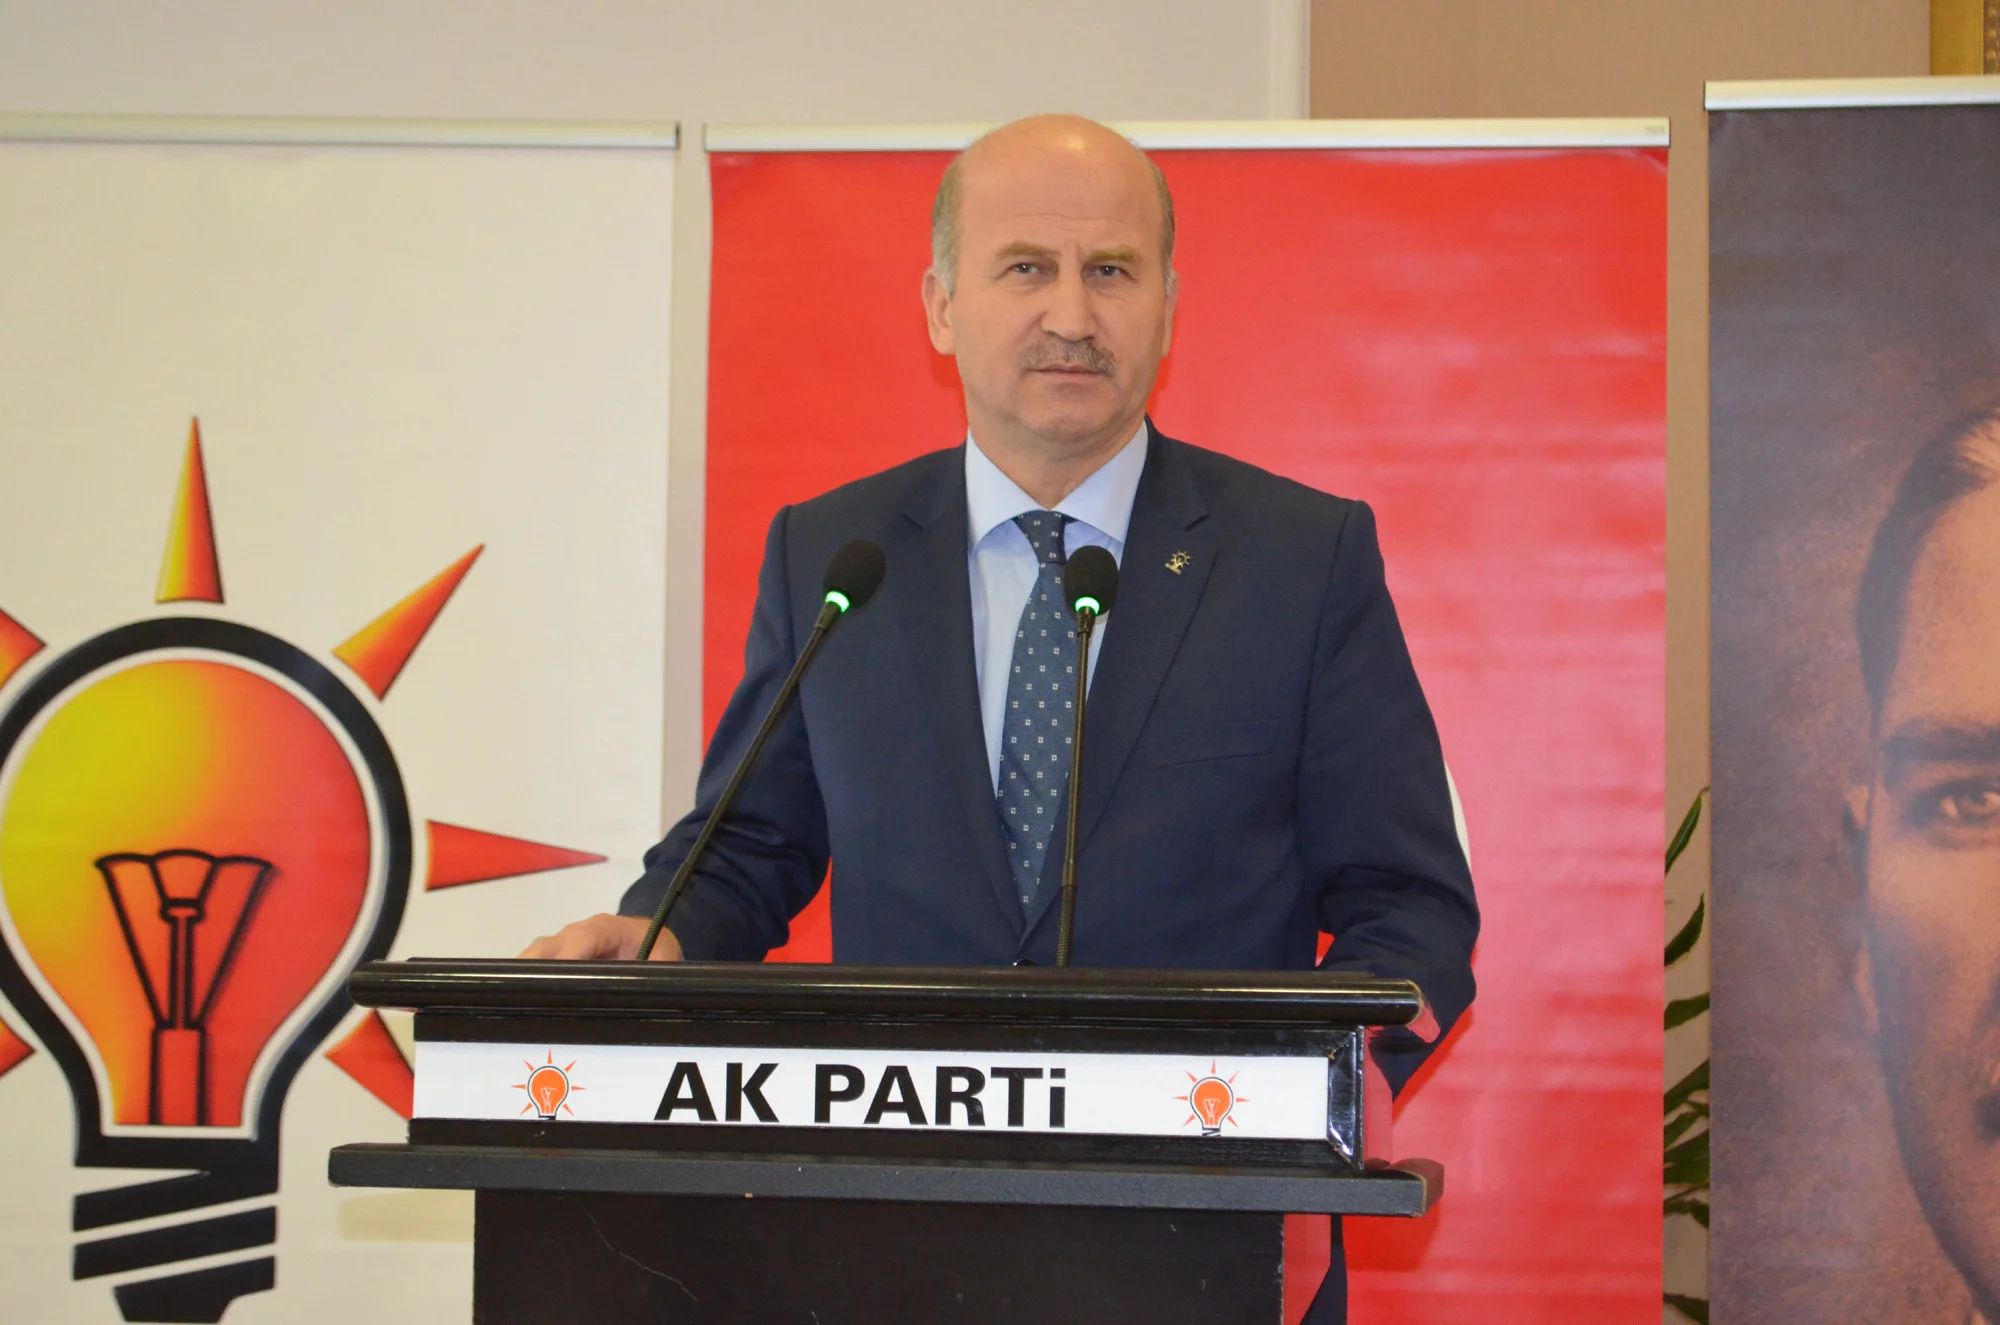 AK Parti Bursa İl Başkanı Torun: "Görevimi bırakıyorum"